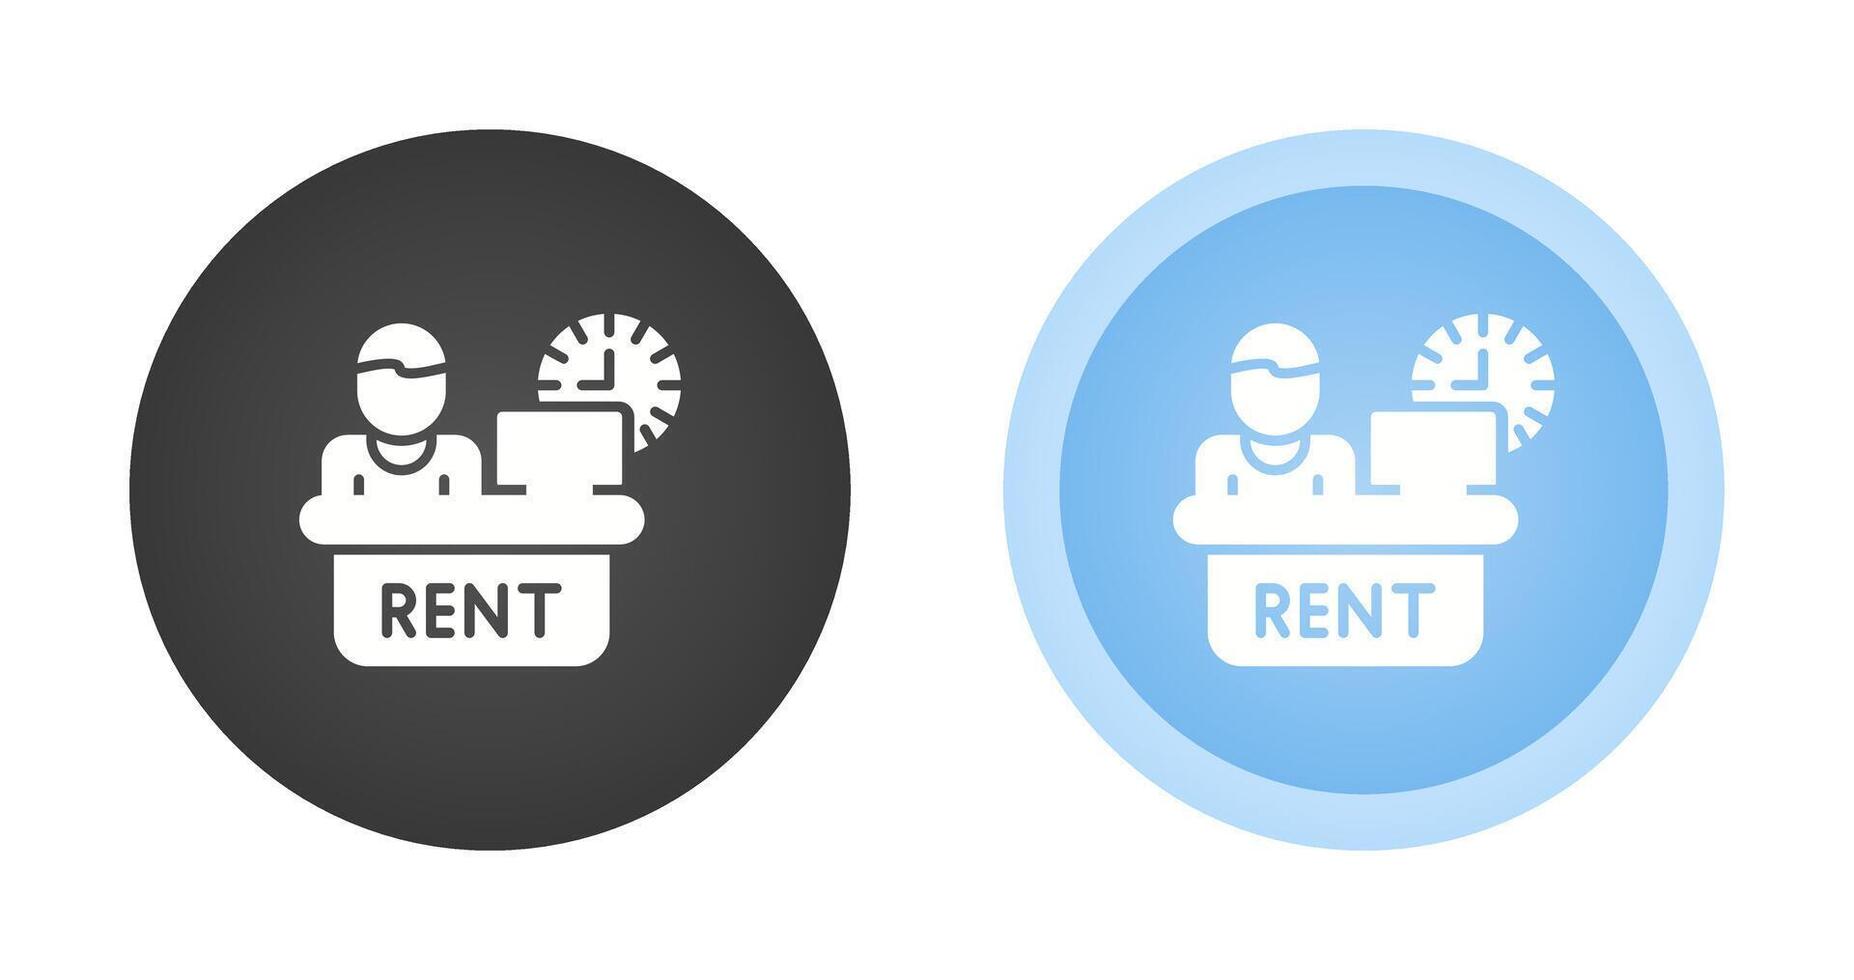 Rental Service Vector Icon